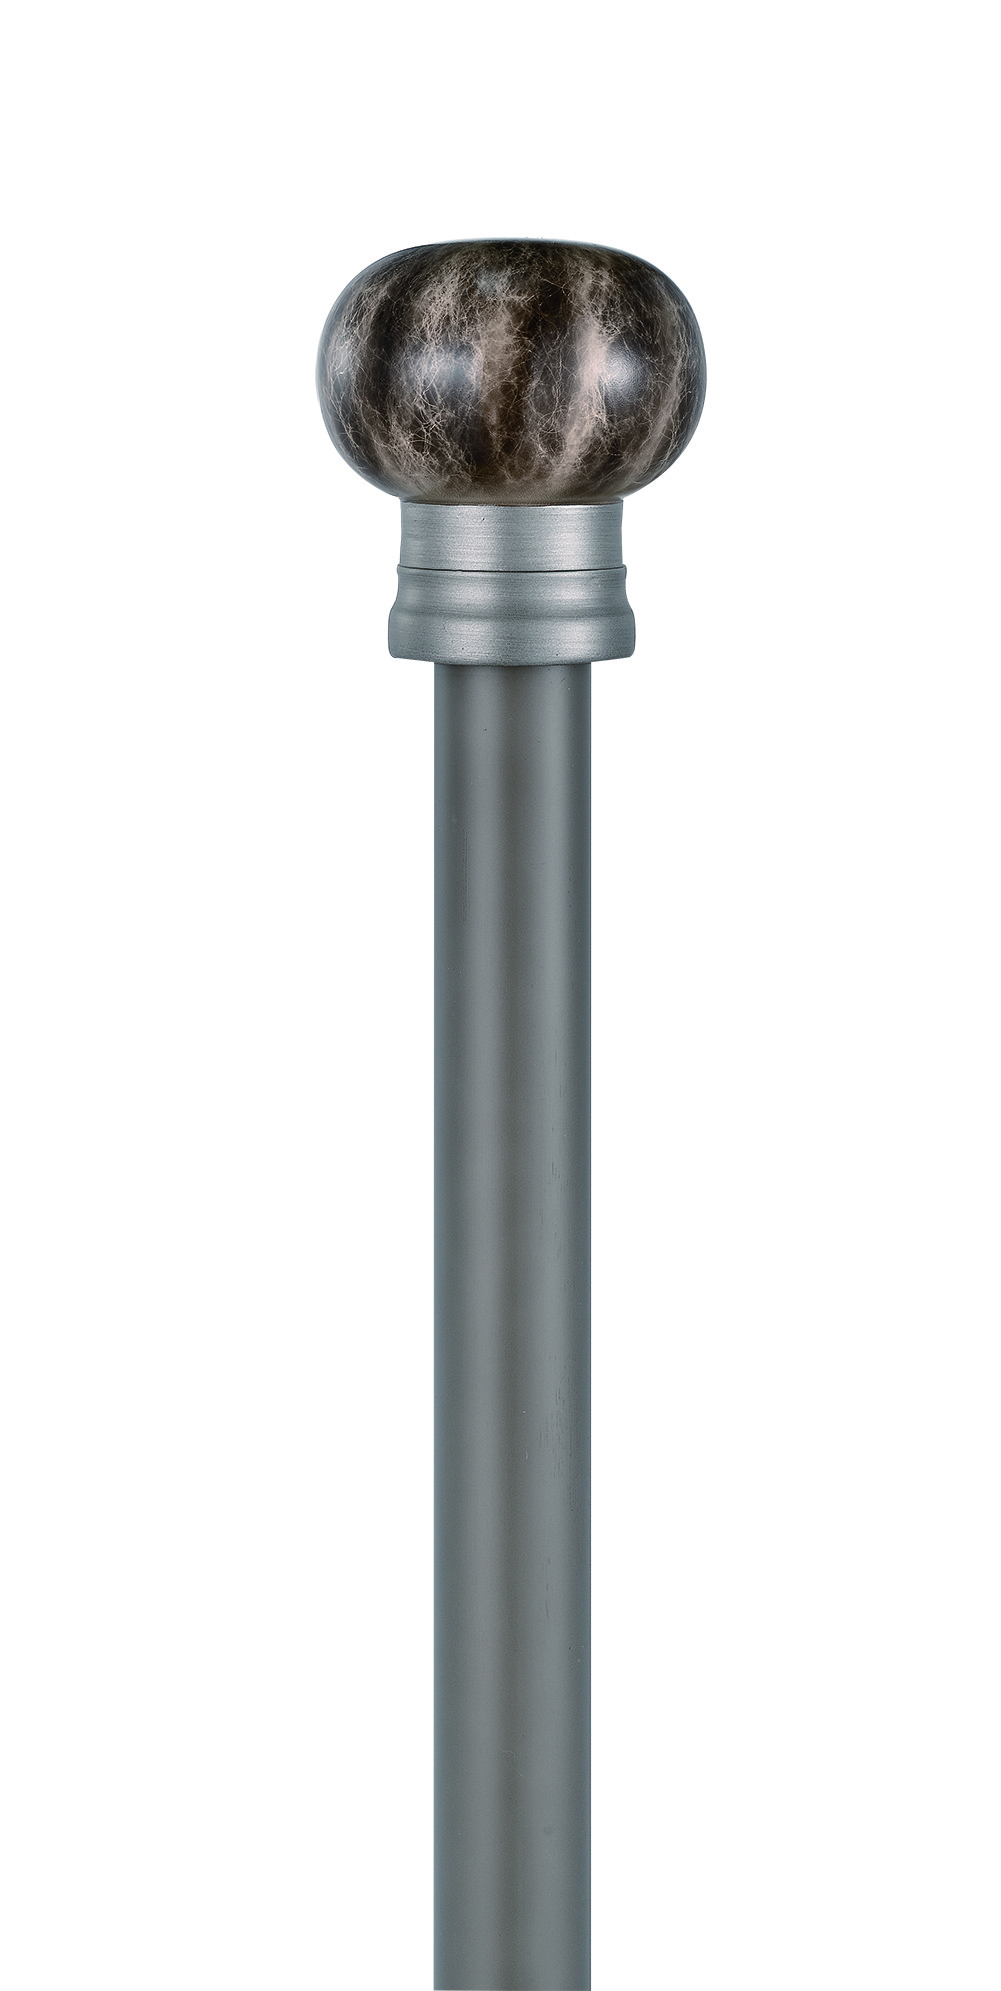 Längen-Aluminiumvorhang Rod Roman Blind Pole 19mm Durchmesser-6.5m